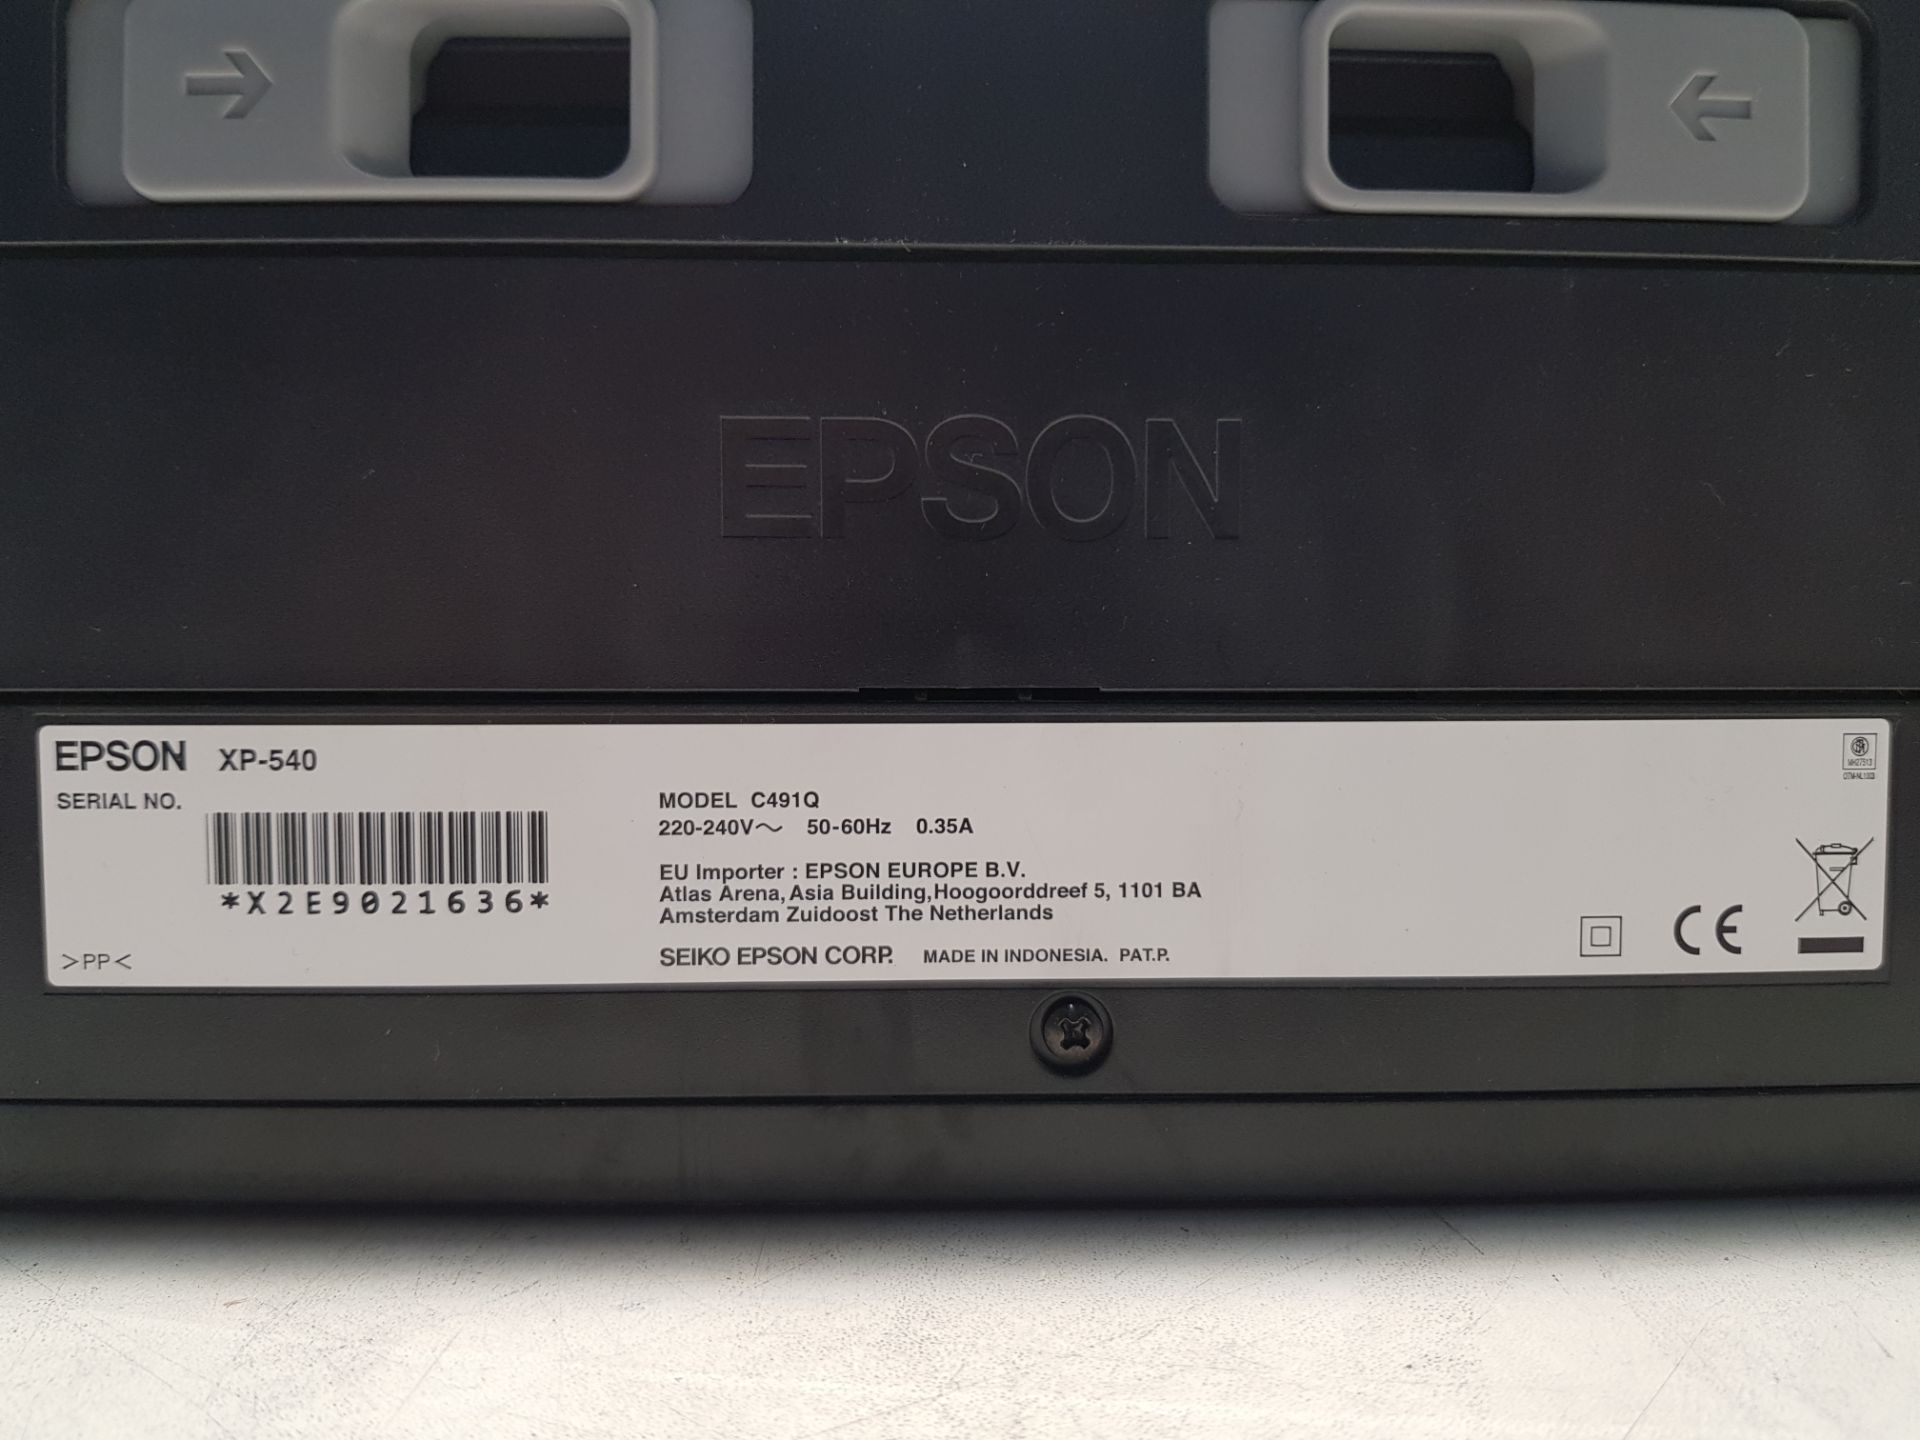 Epson XP-540 All in One Printer Model: C491Q S/N: X2E9021636 - Bild 3 aus 3